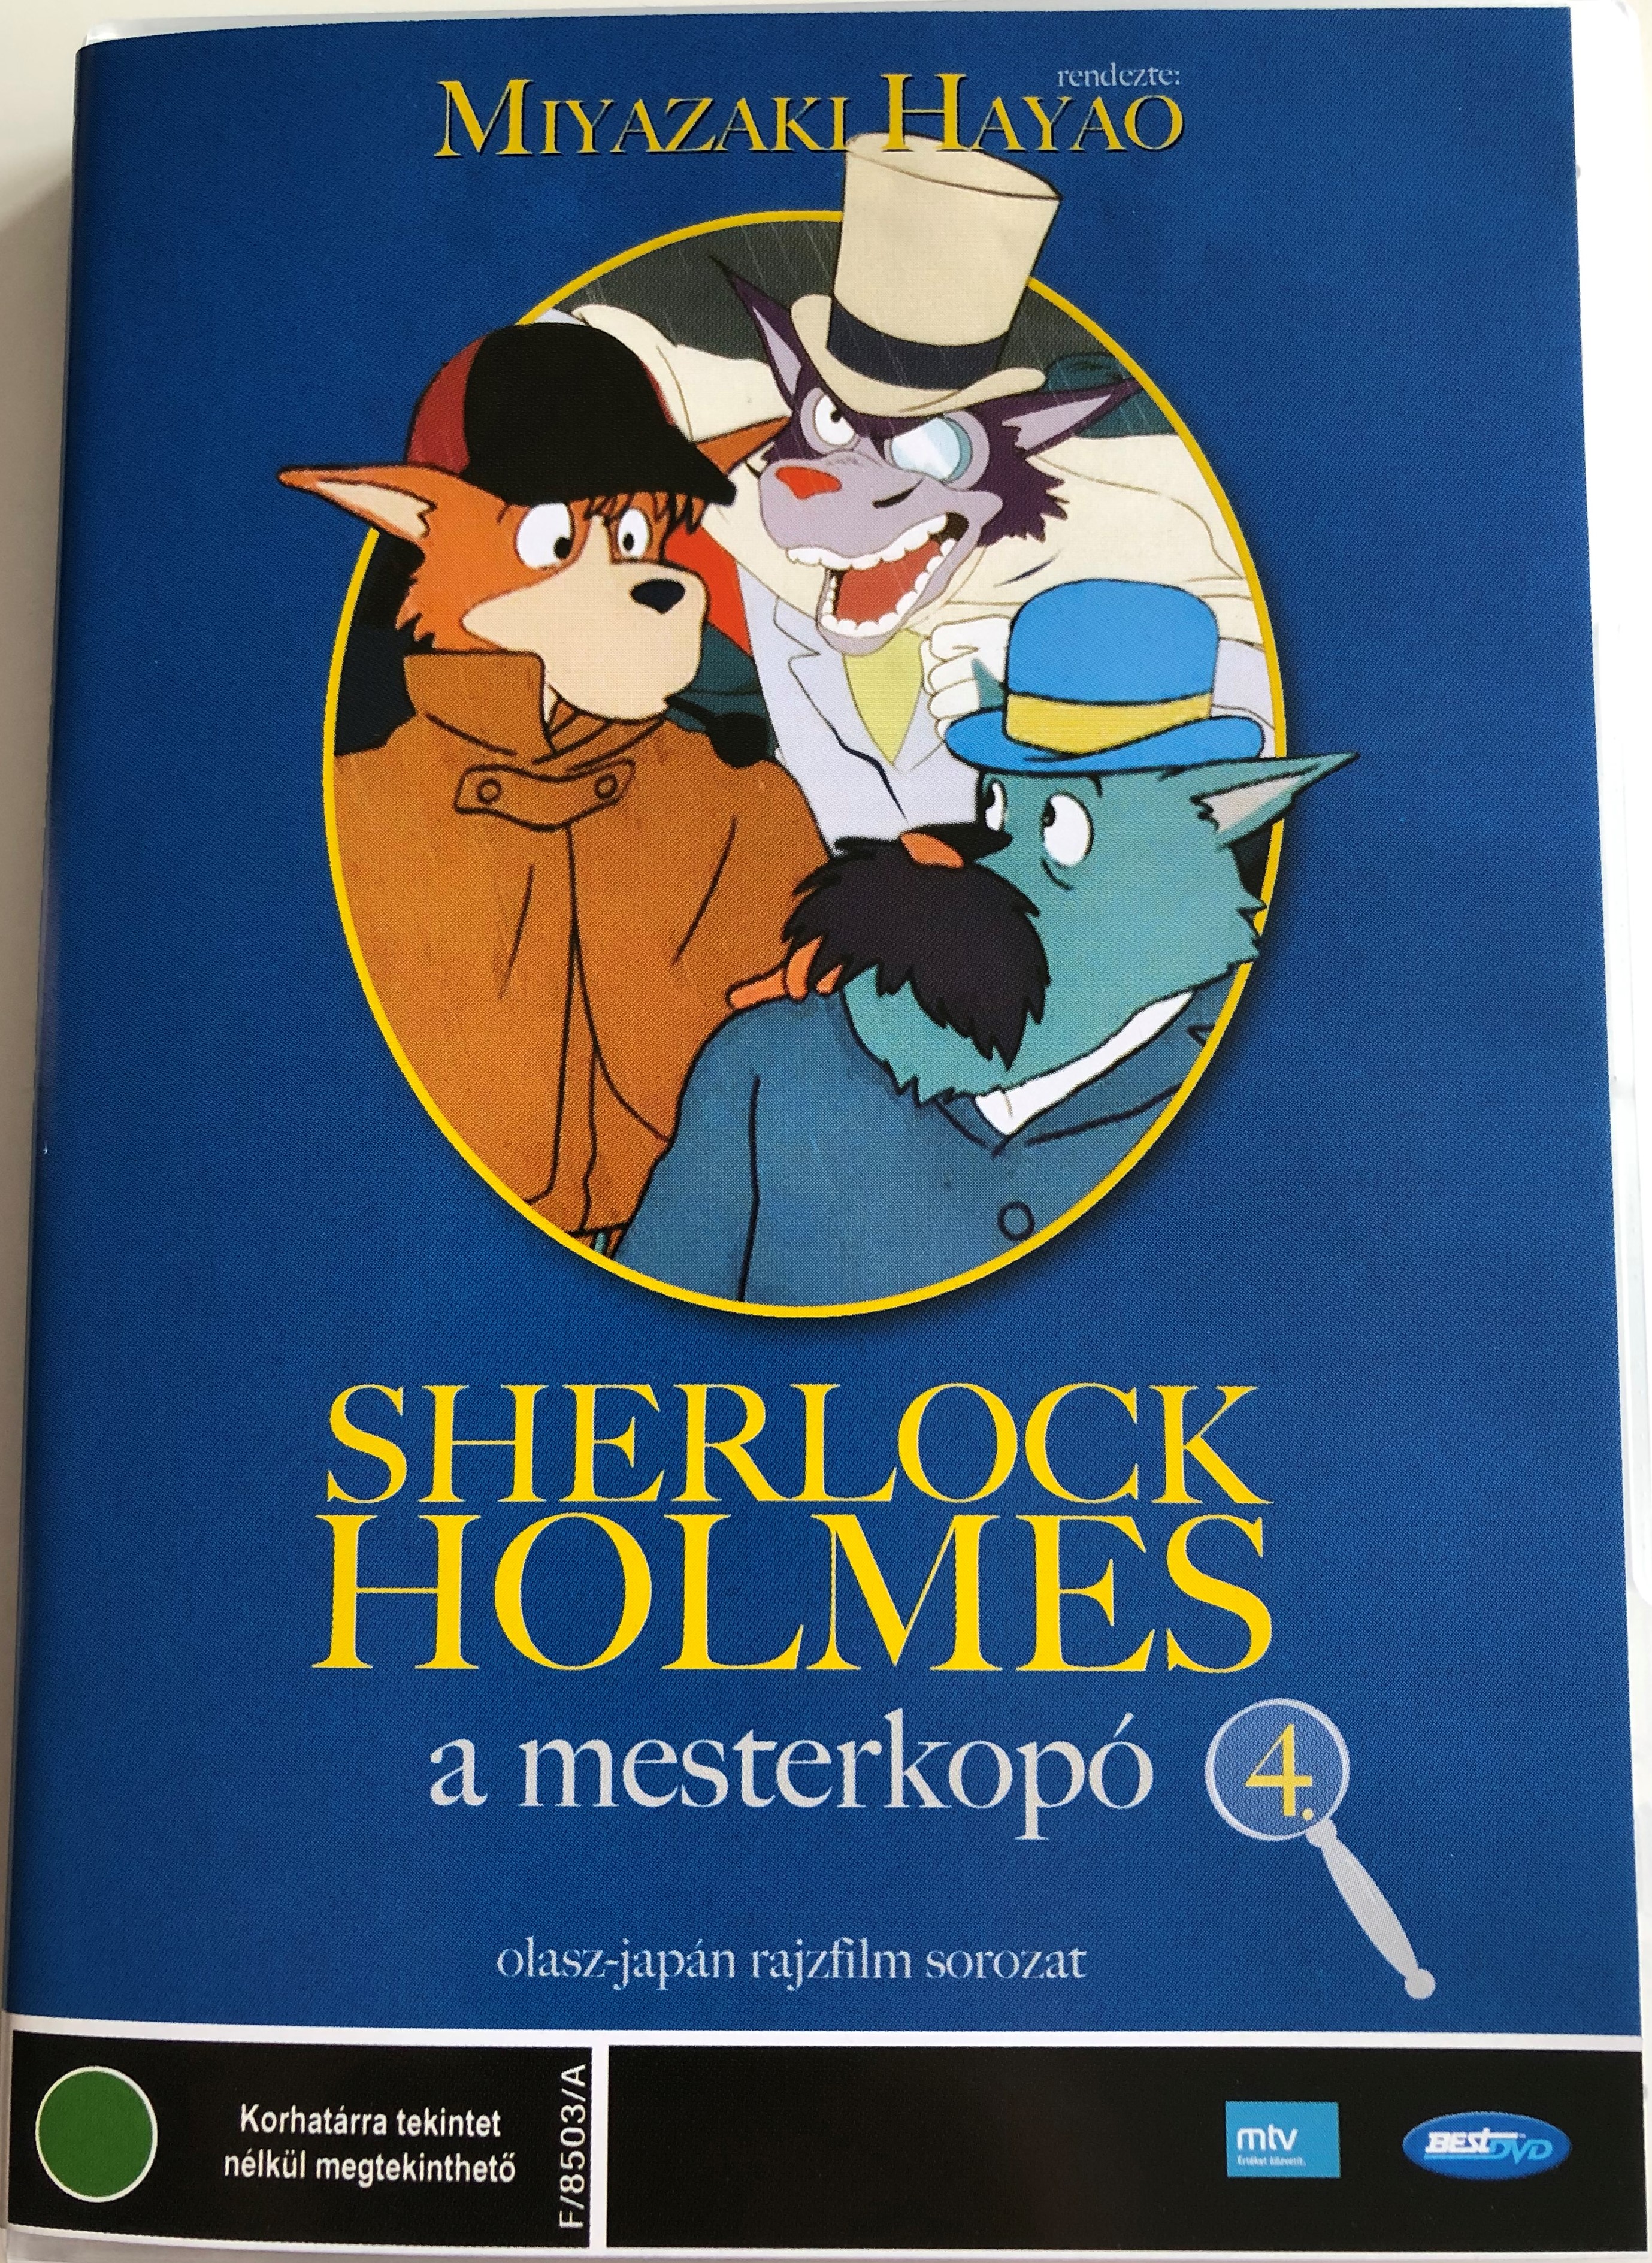  Fiuto di Sherlock Holmes 4. DVD 1985 1